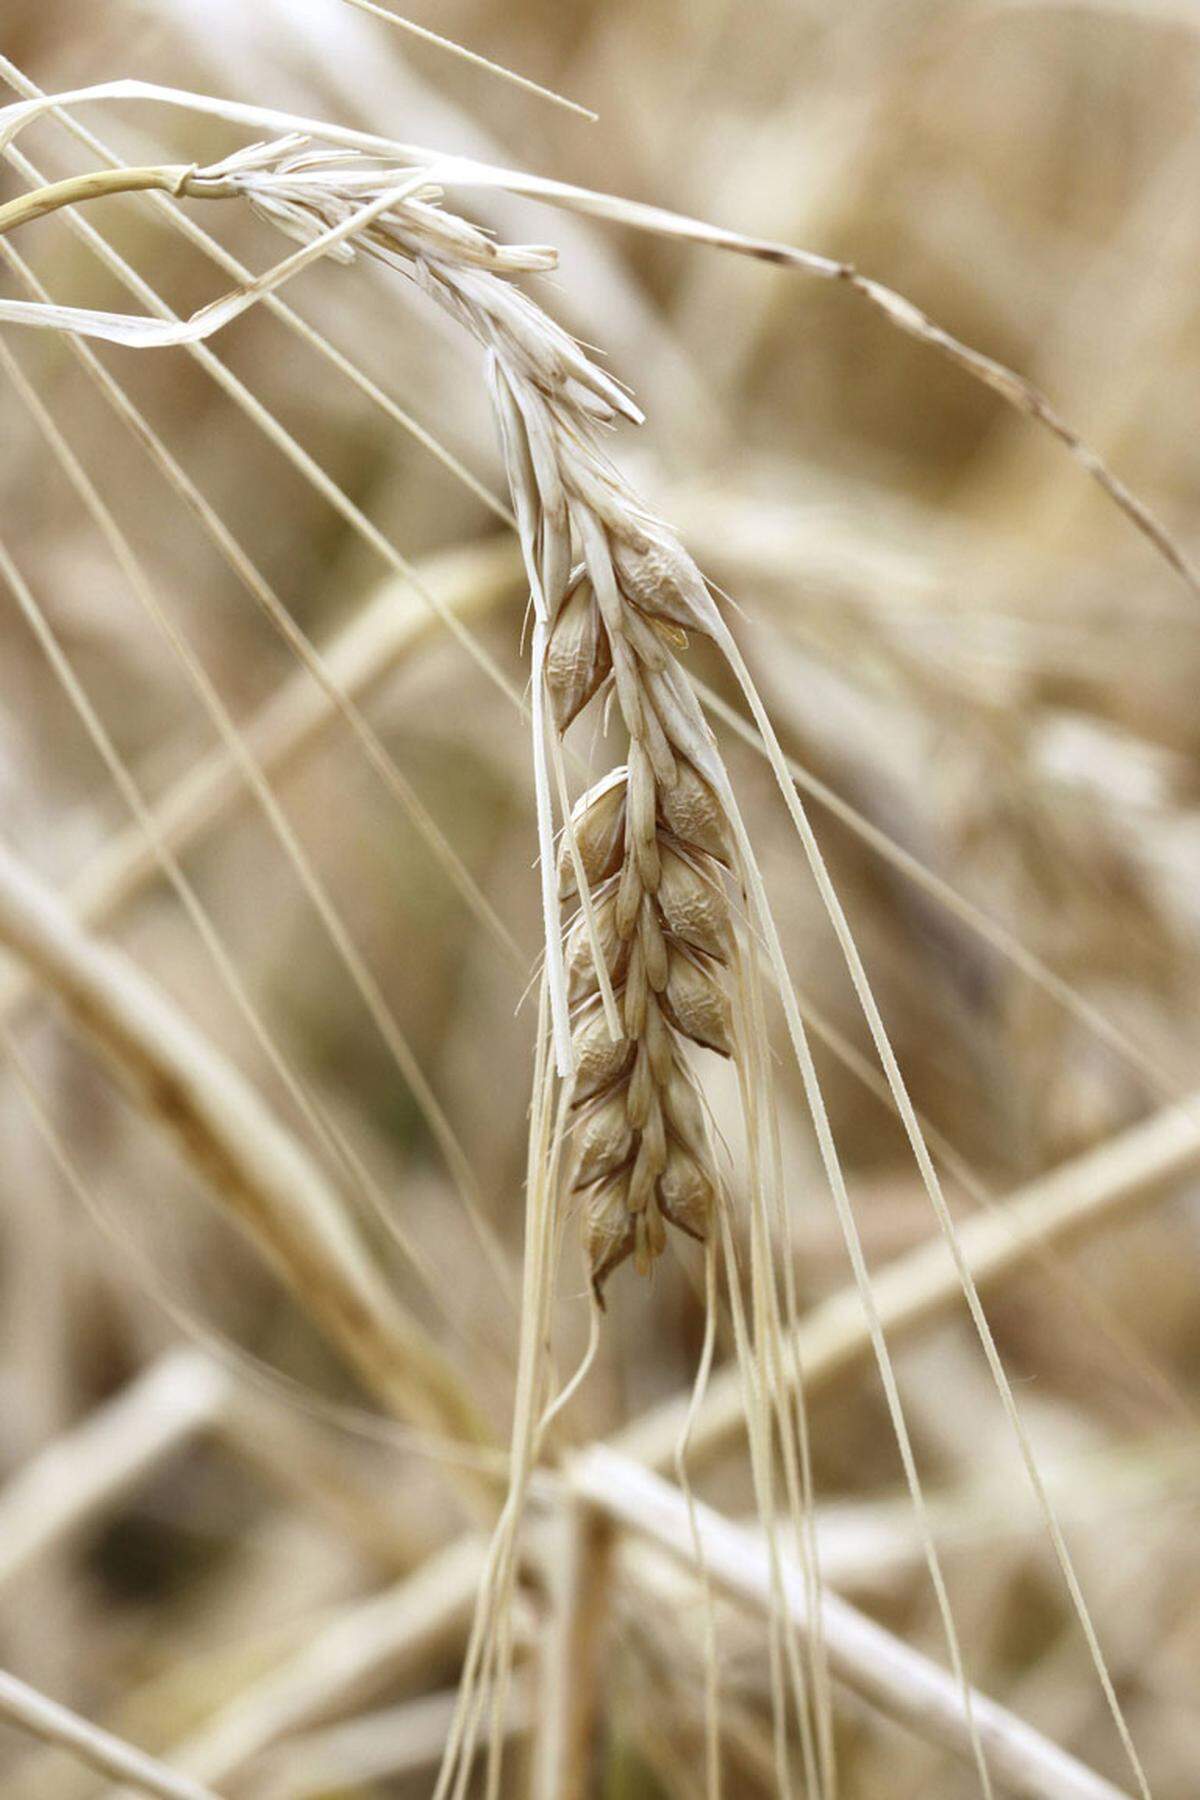 Getreide, insbesondere Reis, Mais, Hafer, Weizen, Roggen, Dinkel, Gerste und Hirse sind ebenfalls gut pflanzliche Eiweißquellen.